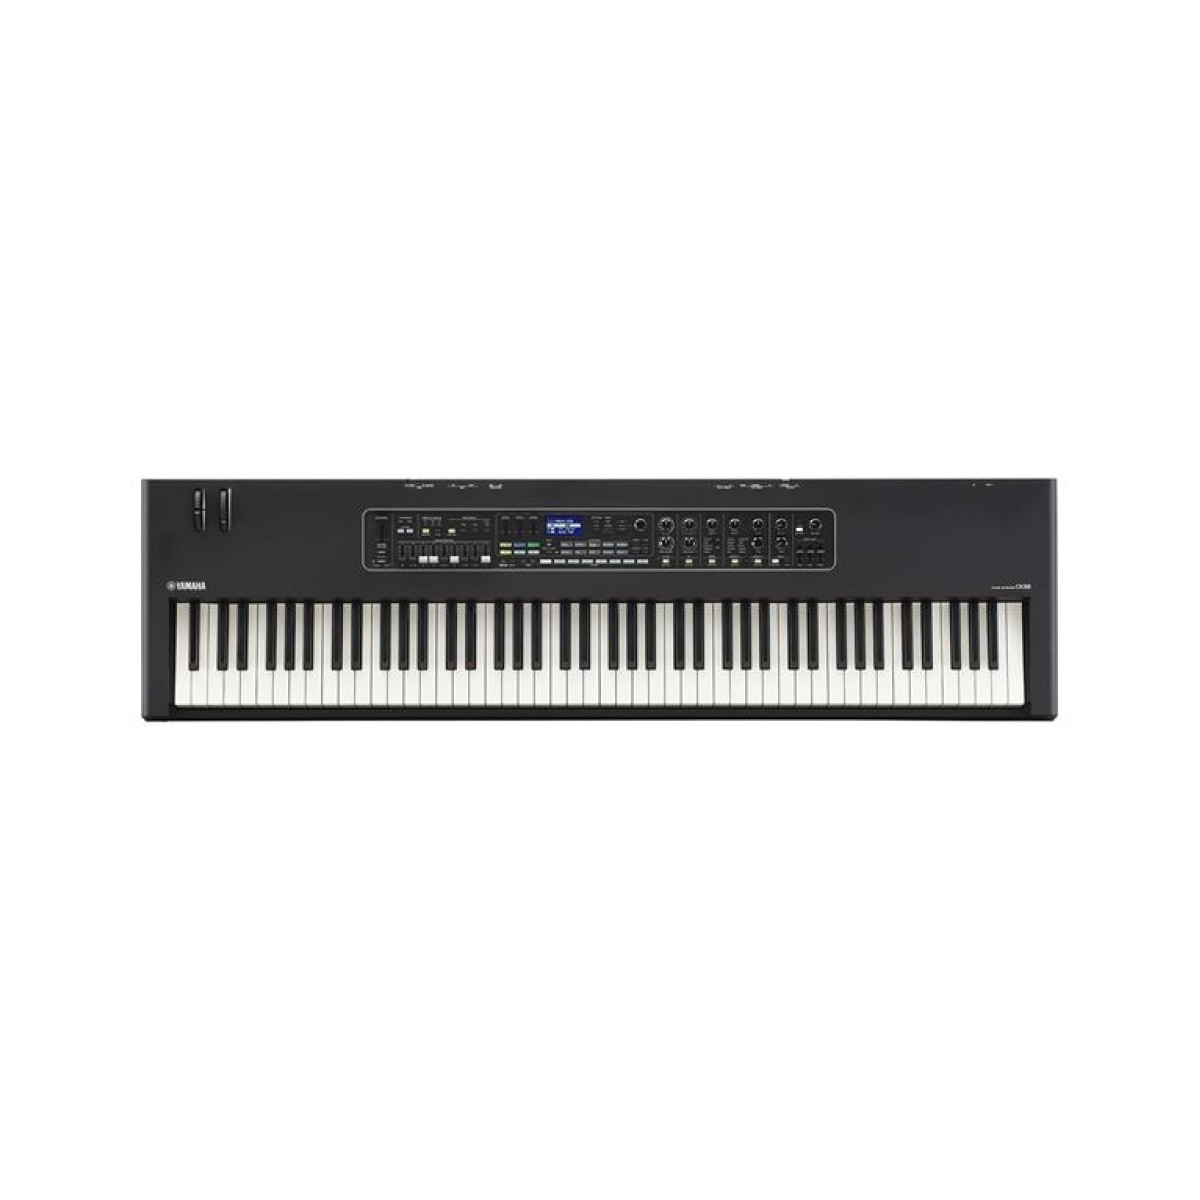 YAMAHA CK88 Stage Keyboard - Synthesizer